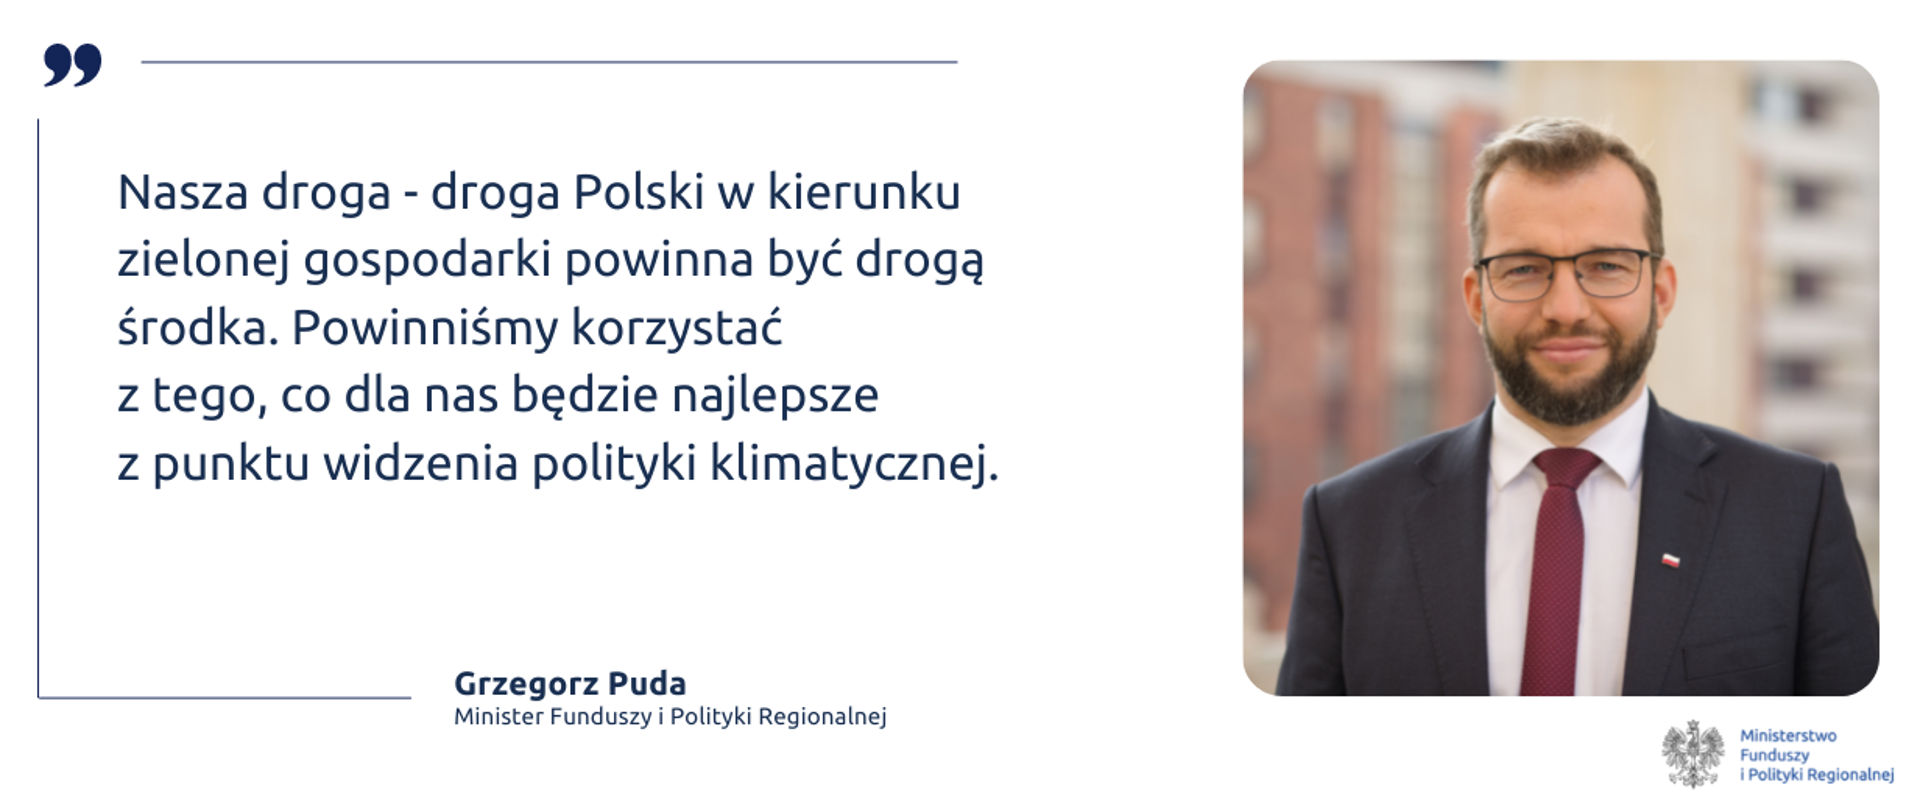 Po prawej zdjęcie ministra Grzegorza Pudy. Po lewej tekst: "Nasza droga - droga Polski w kierunku zielonej gospodarki powinna być drogą środka. Powinniśmy korzystać z tego, co dla nas będzie najlepsze z punktu widzenia polityki klimatycznej".